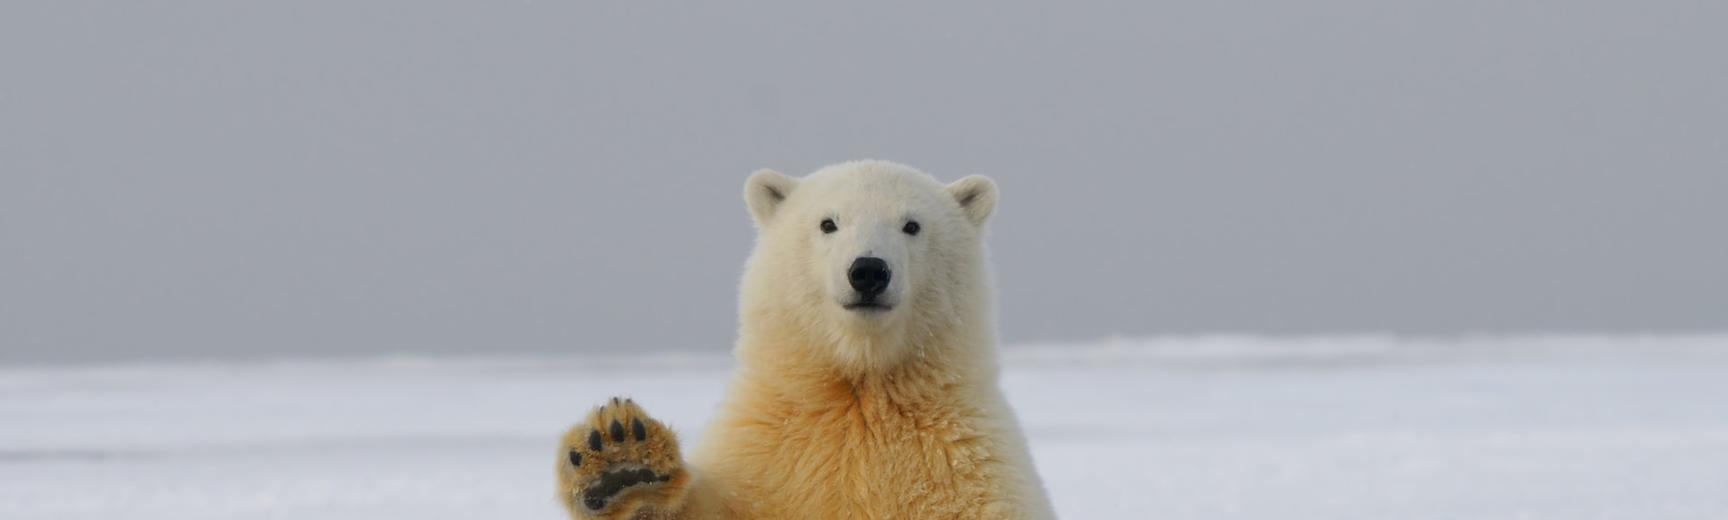 Polar bear by Hans-Jurgen Mager